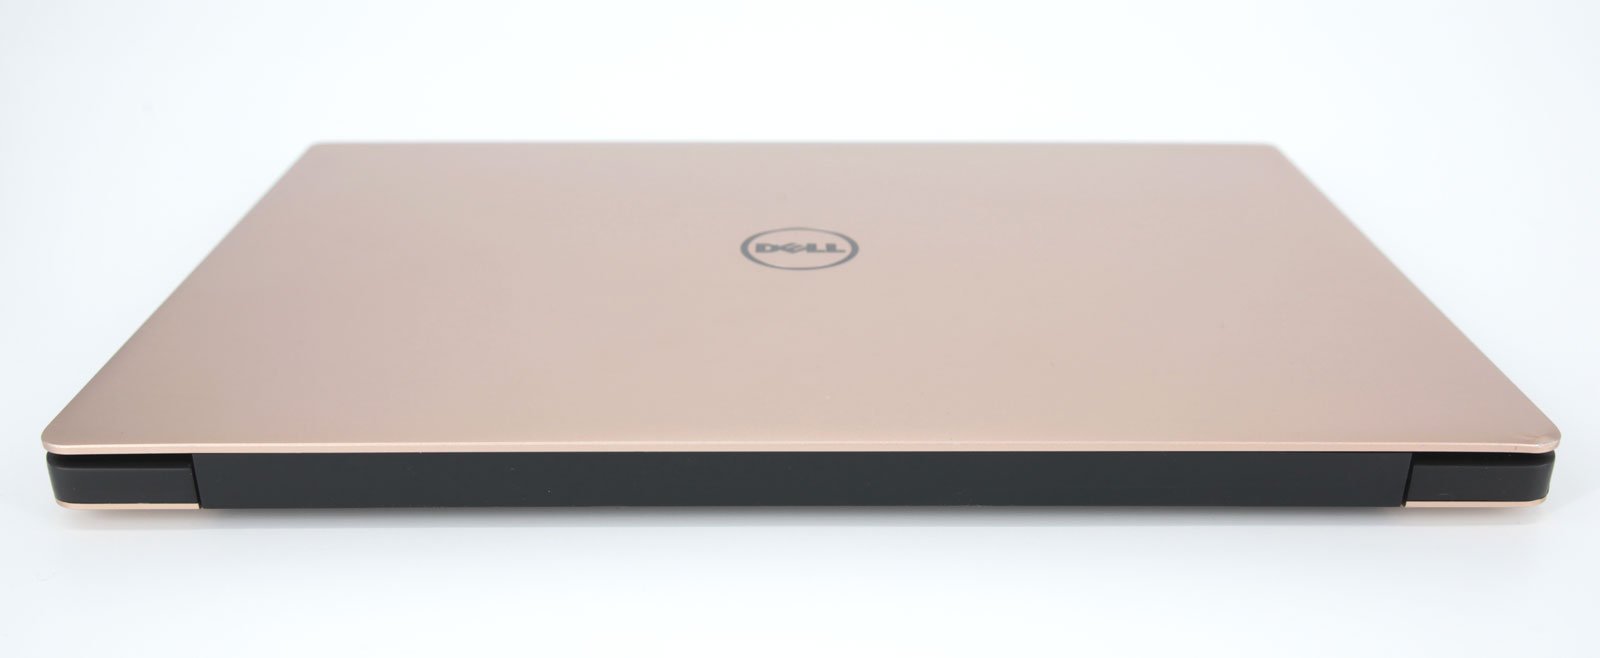 Dell XPS 13 9360 Laptop: Intel Core i7 7th Gen, 256GB SSD, 8GB RAM, Warranty - CruiseTech